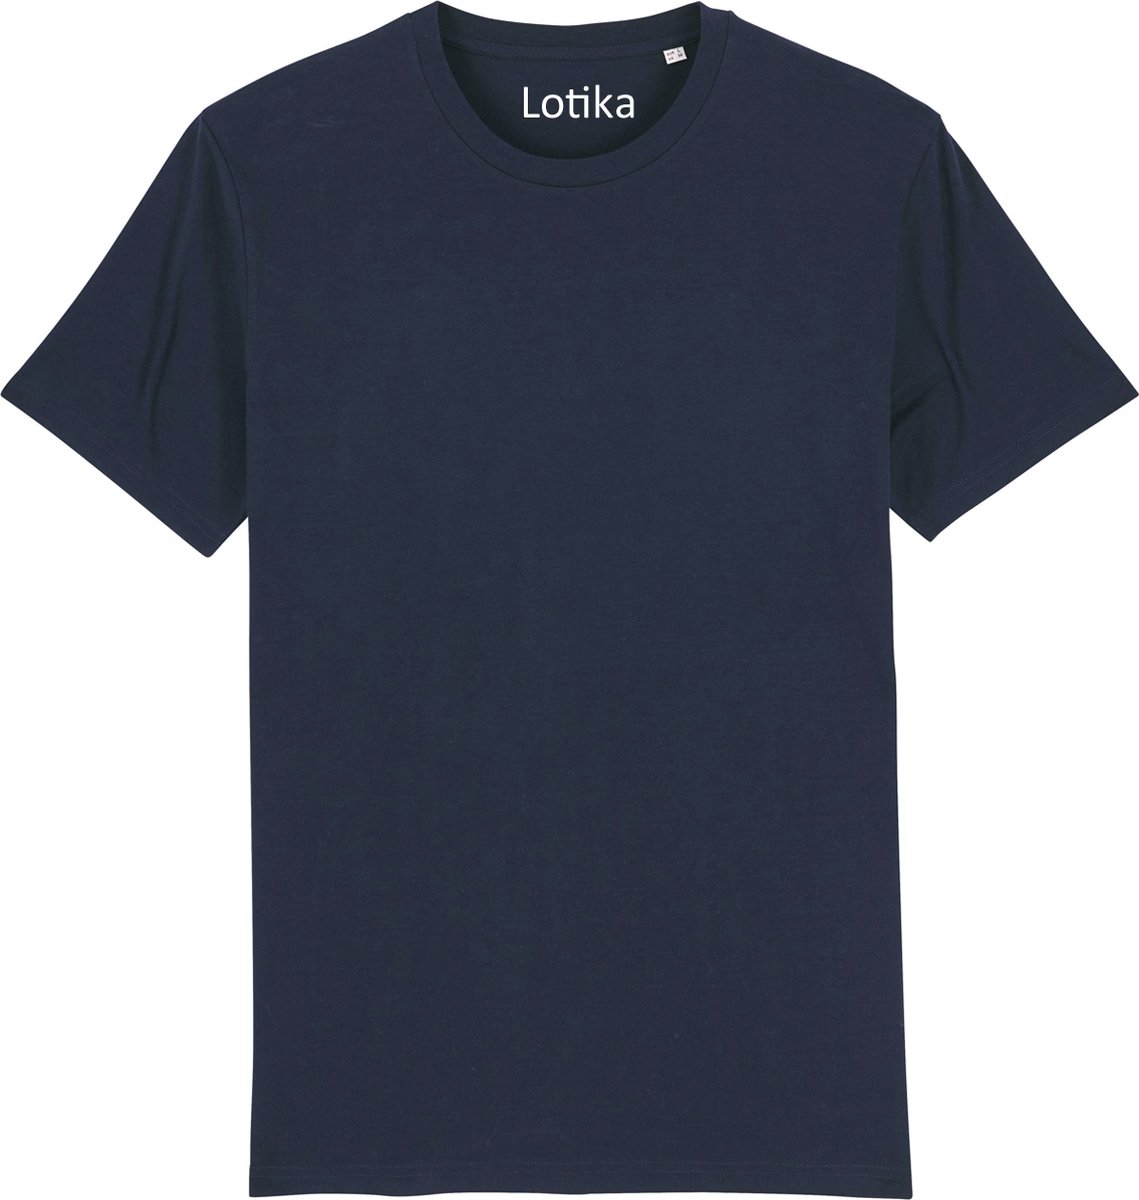 Lotika - Daan T-shirt biologisch katoen navy